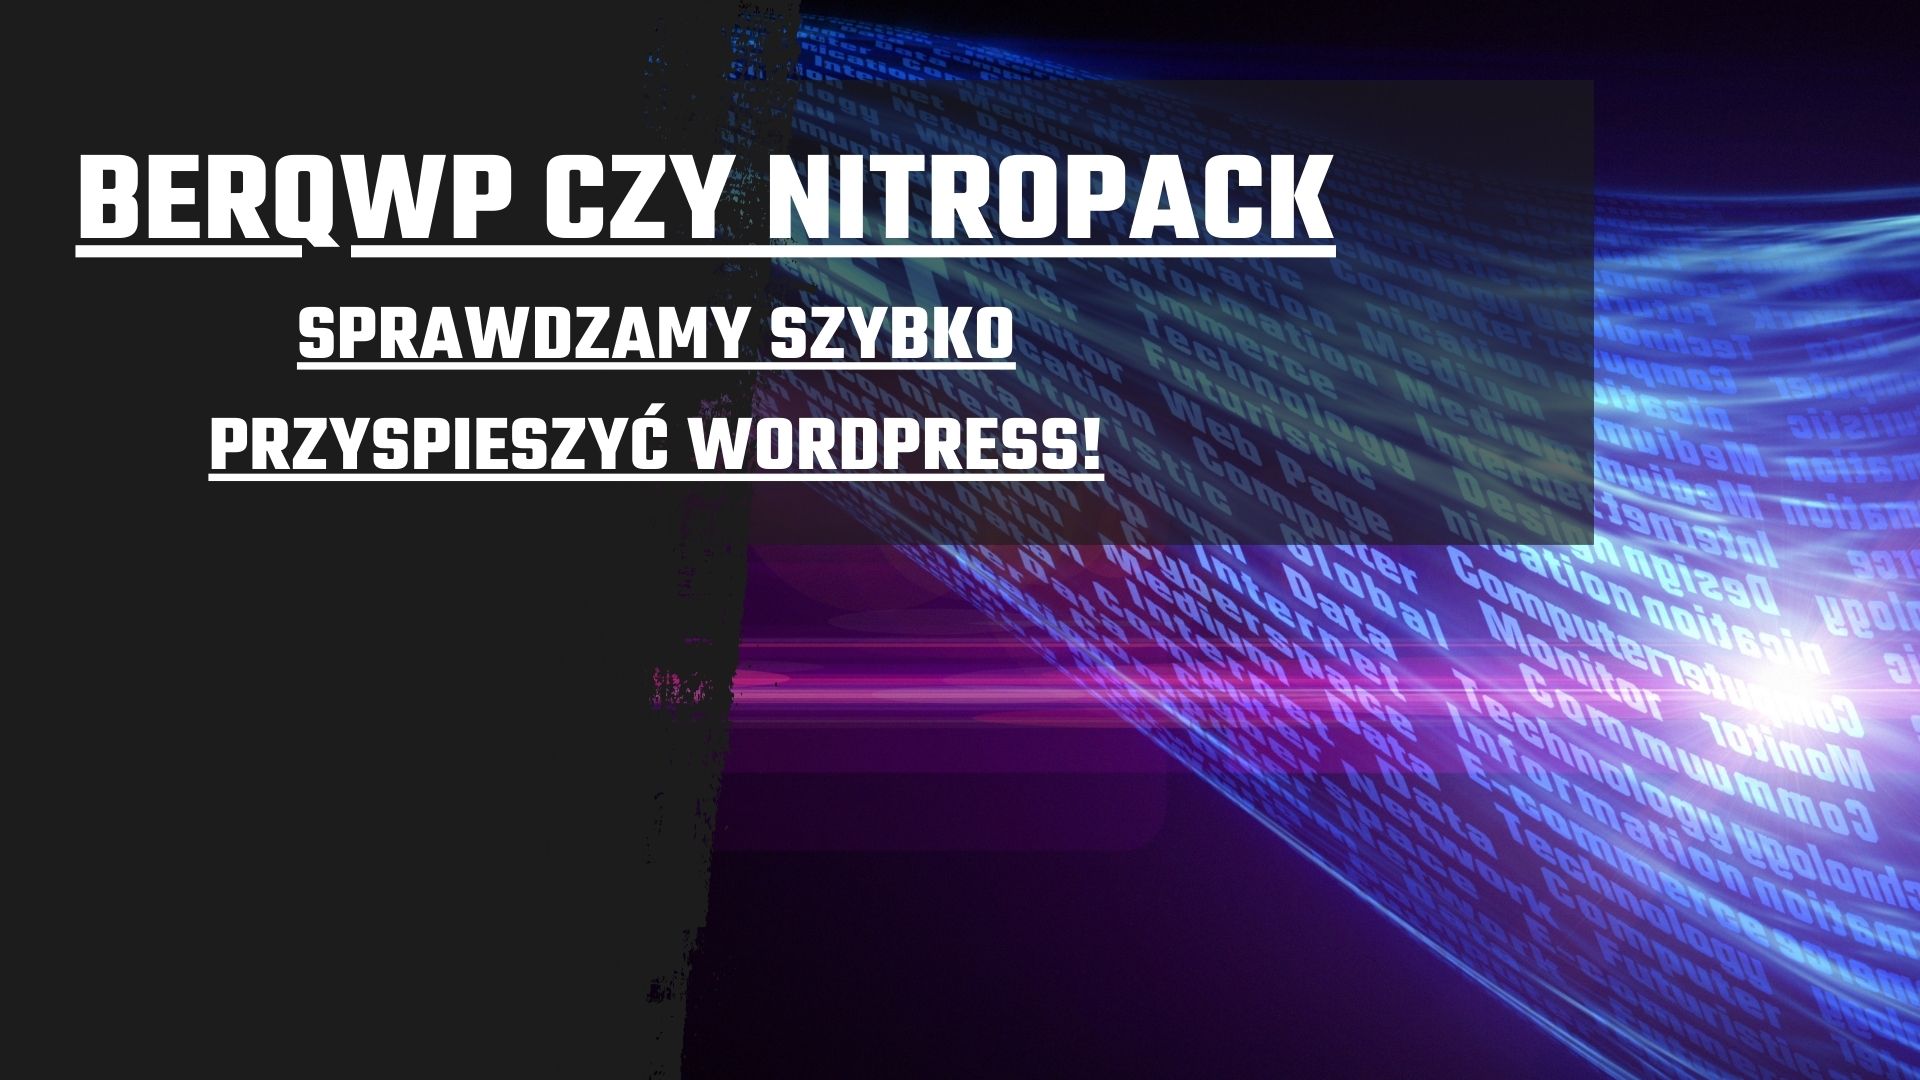 BerqWP czy NitroPack? Sprawdzamy szybko przyspieszyć WordPress!